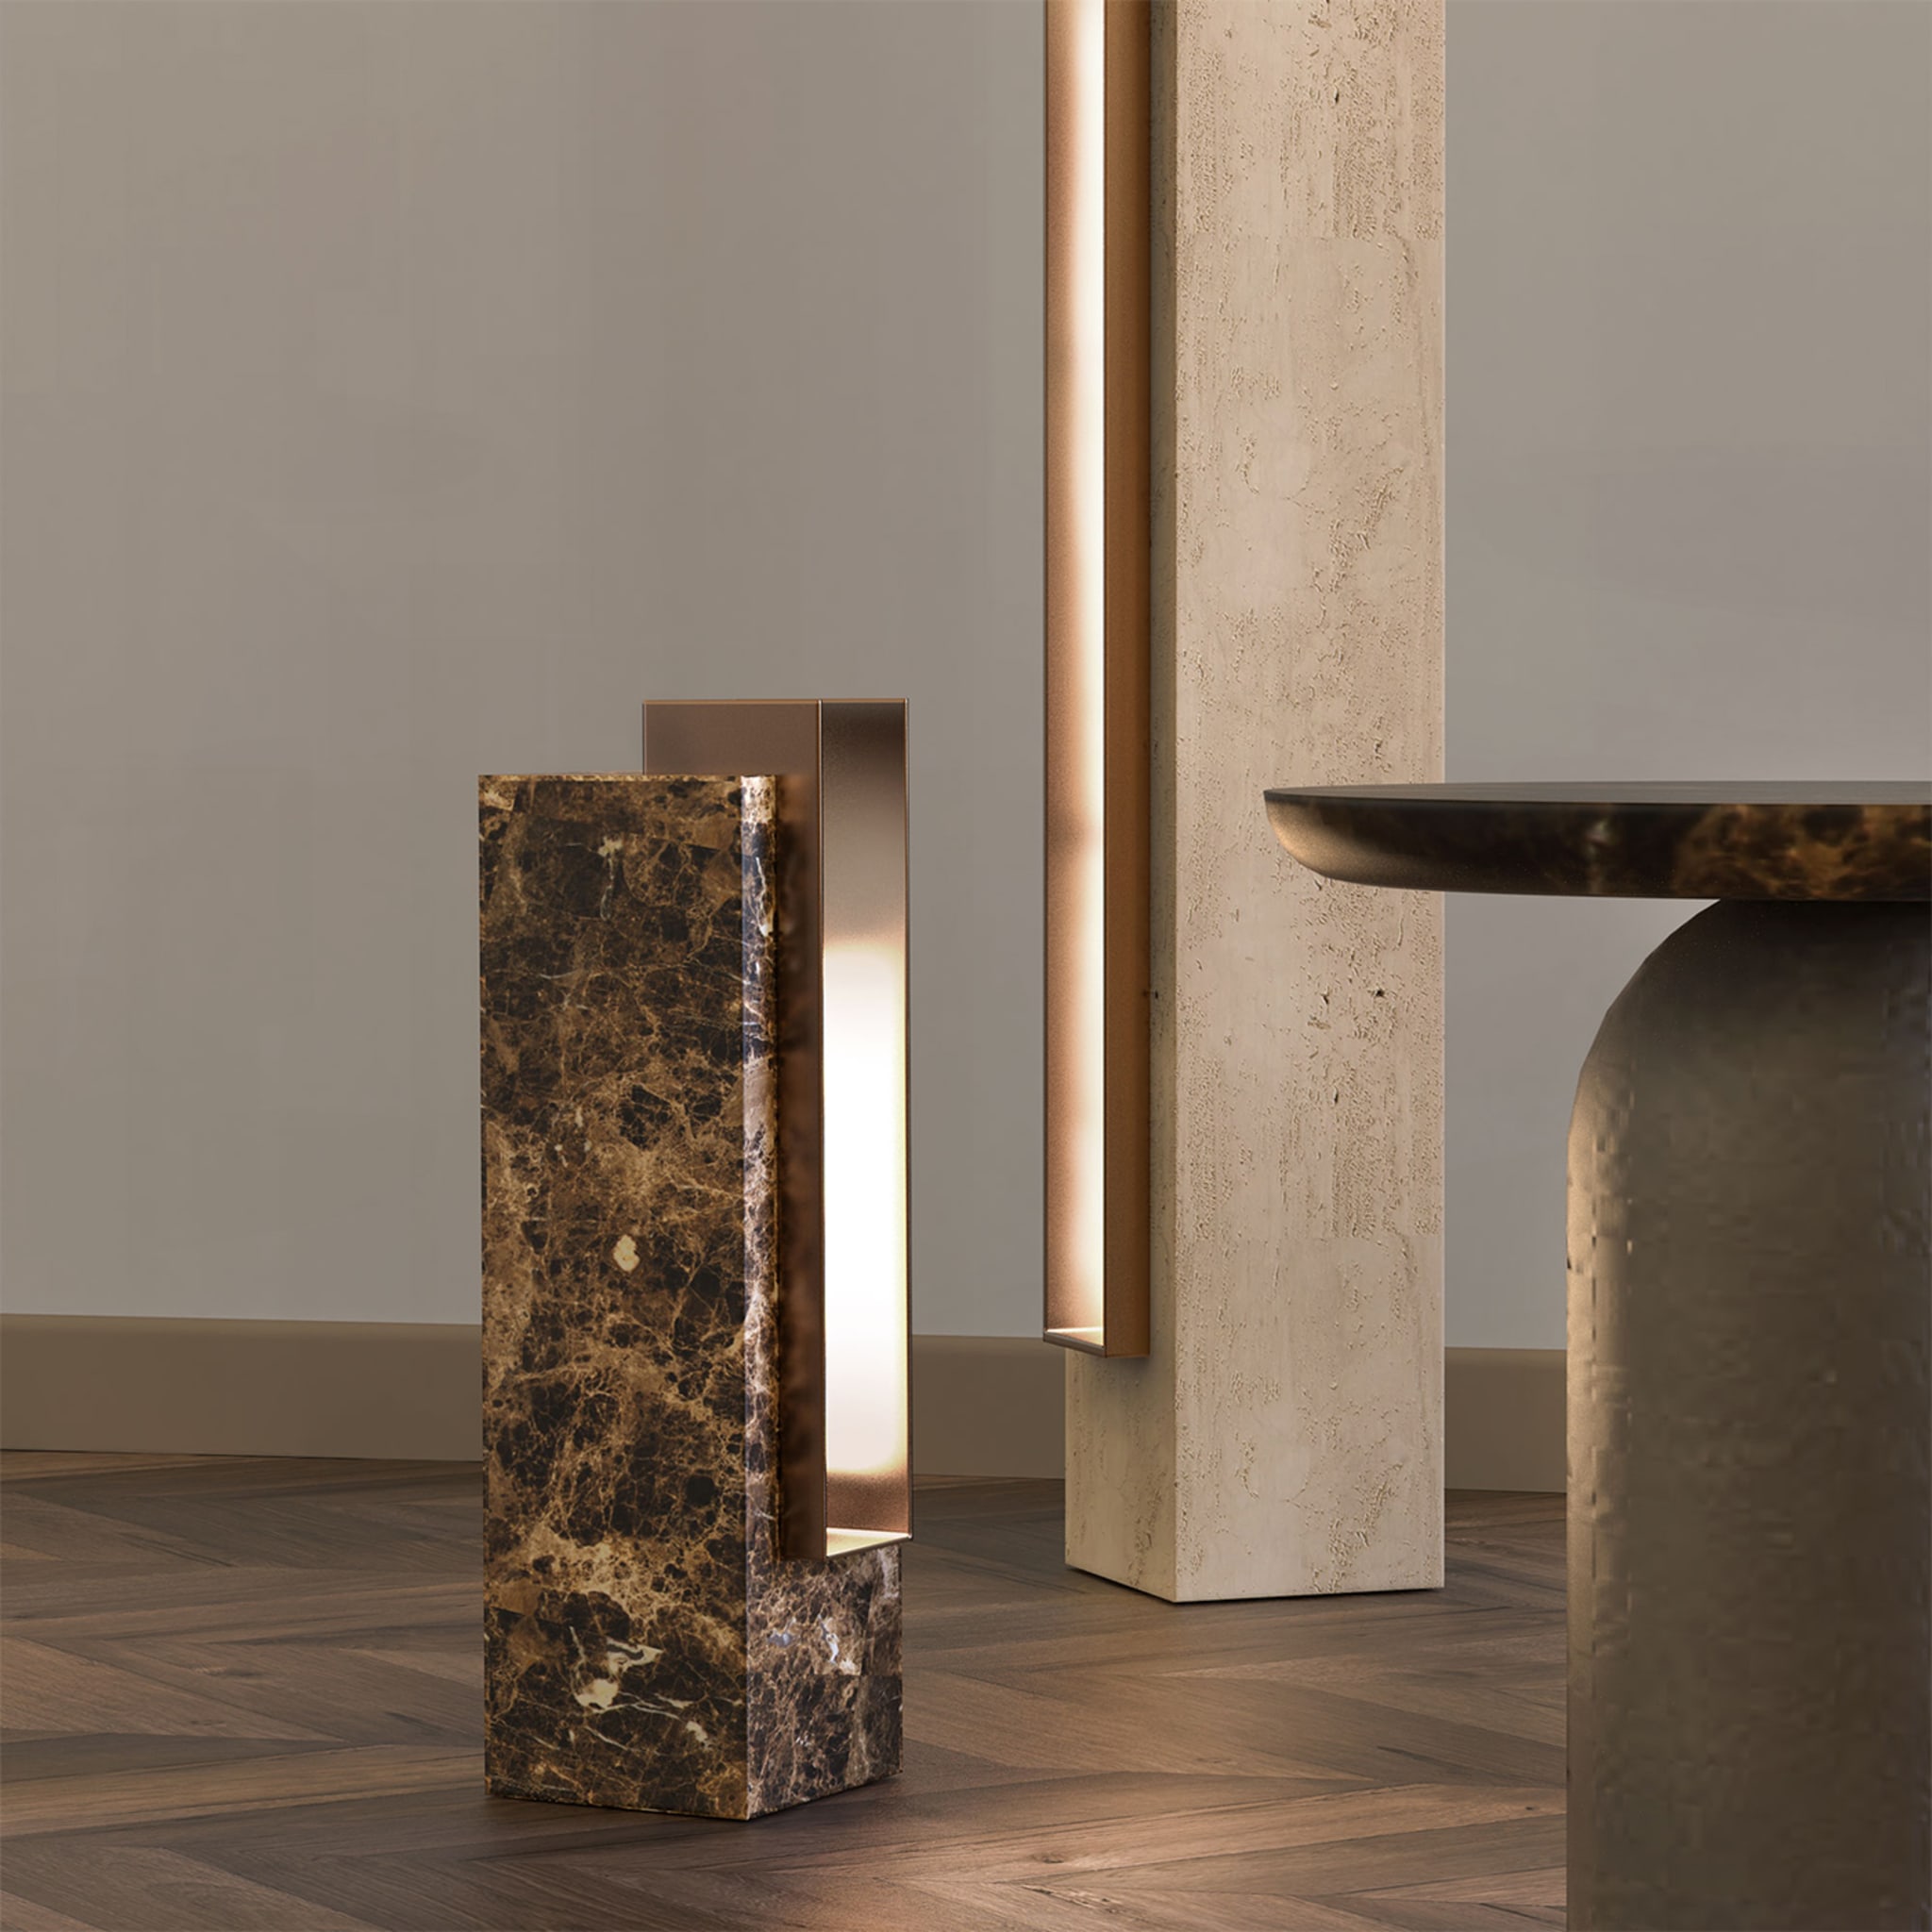 Specchia Travertine and Bronze Table Lamp - Alternative view 2